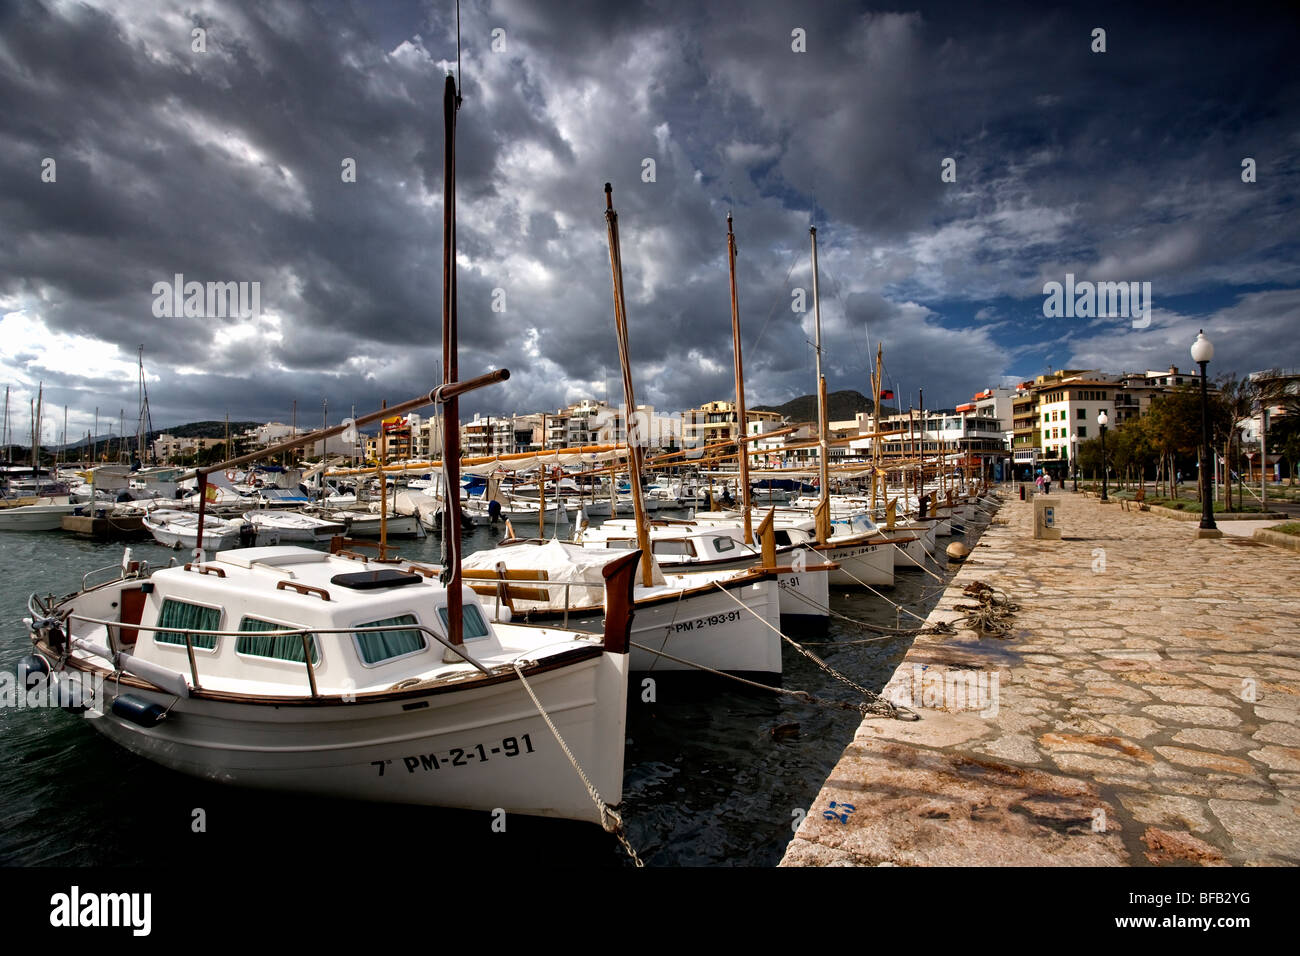 Sail Boats, Port de Pollenca (puerto pollensa), Mallorca Stock Photo ...